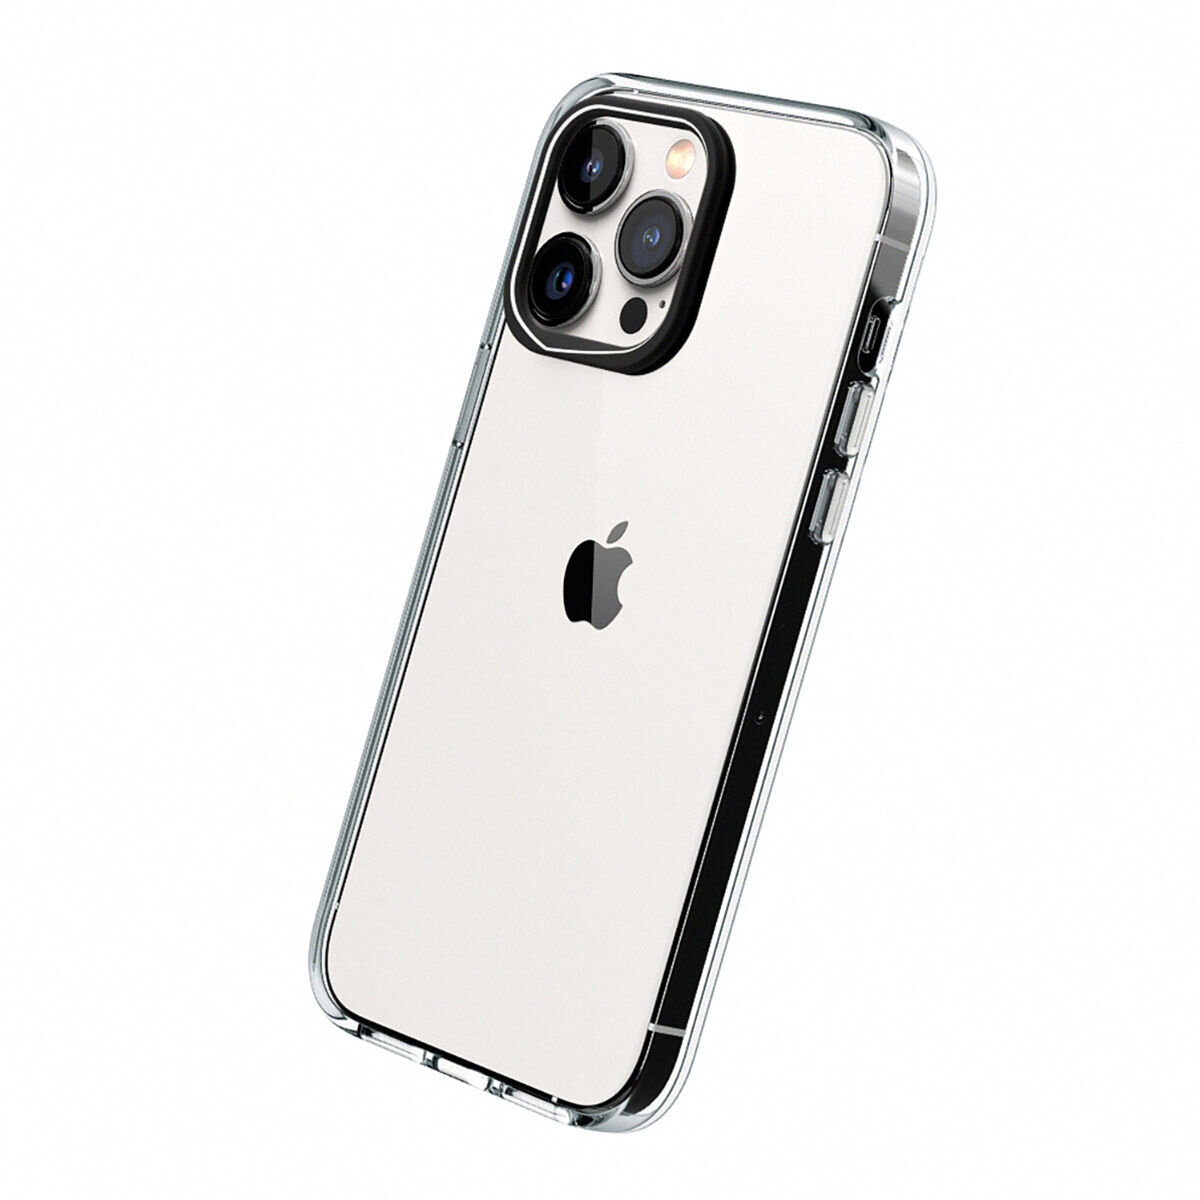 犀牛盾 iPhone 14 Pro Max Clear 透明防摔手機殼 + 9H 3D滿版螢幕玻璃保護貼 + 手機掛繩 絲綢橘